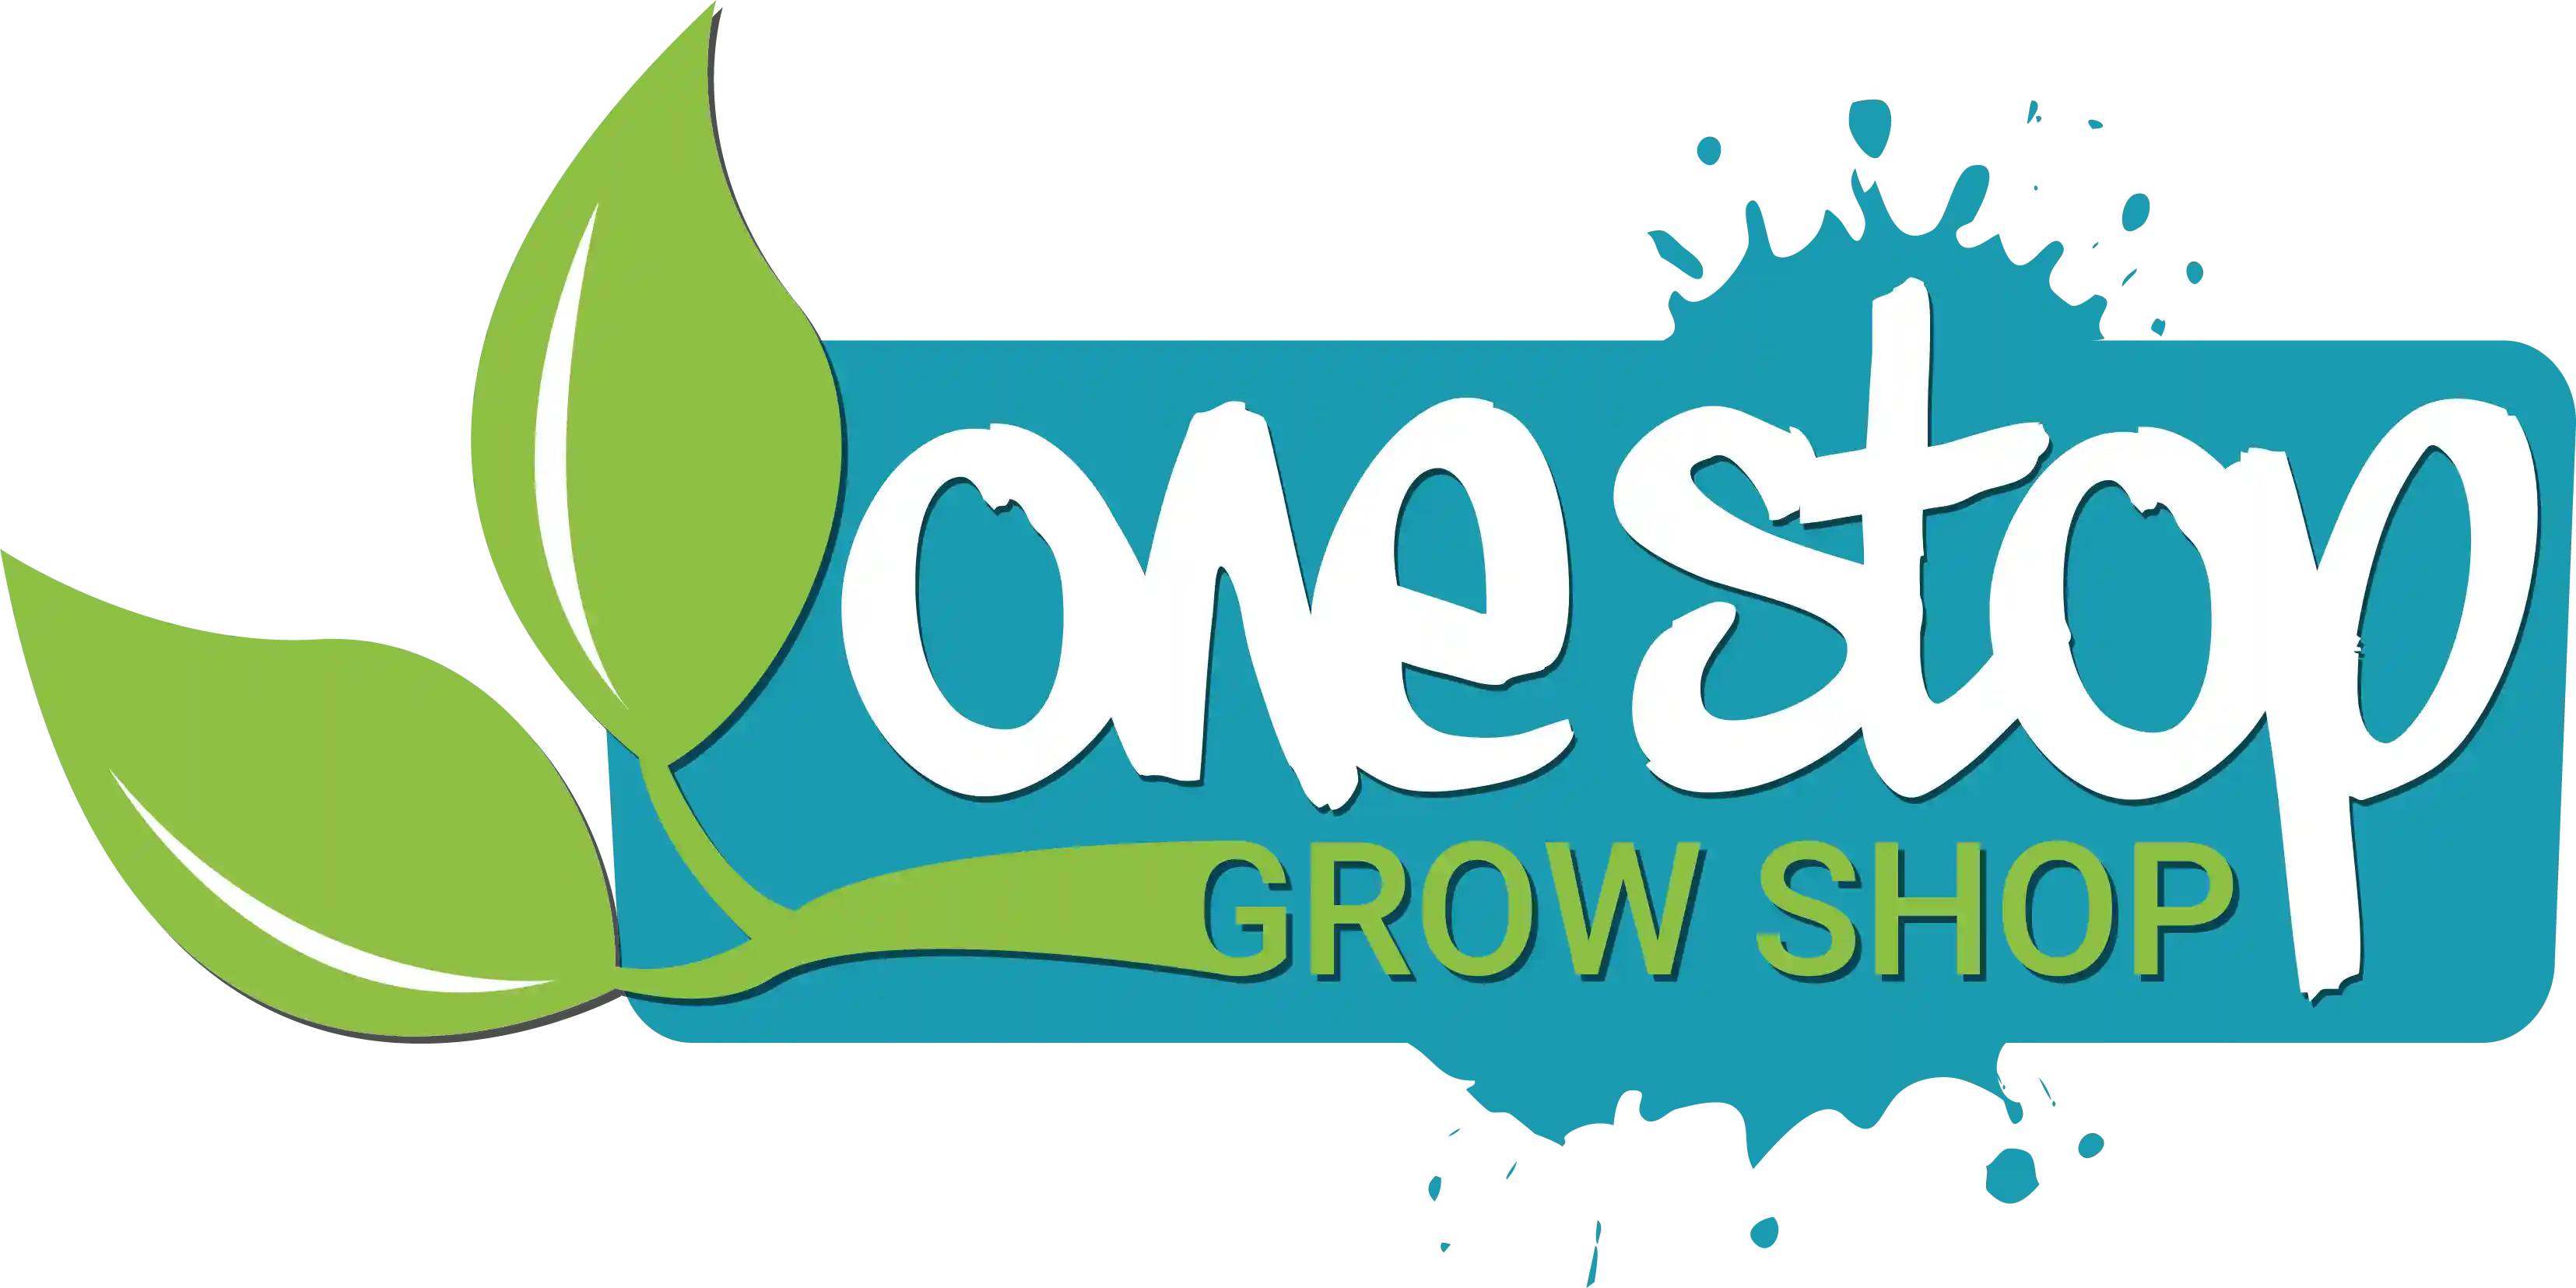 onestopgrowshop.co.uk